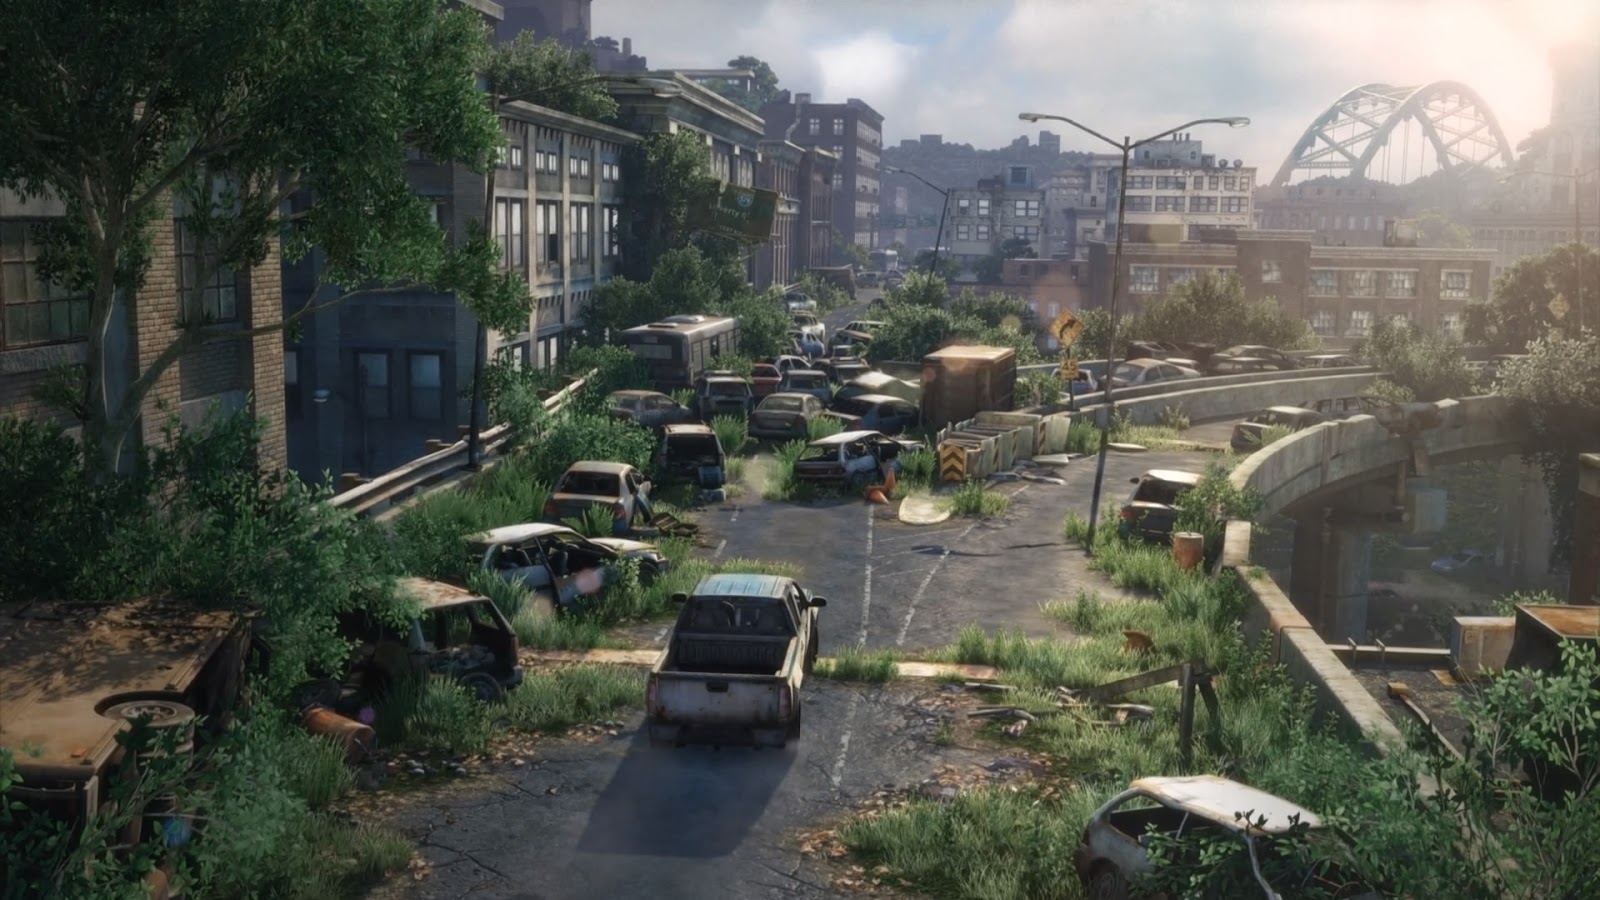 Veja lugares reais como cenários de The Last of Us - Nerdizmo